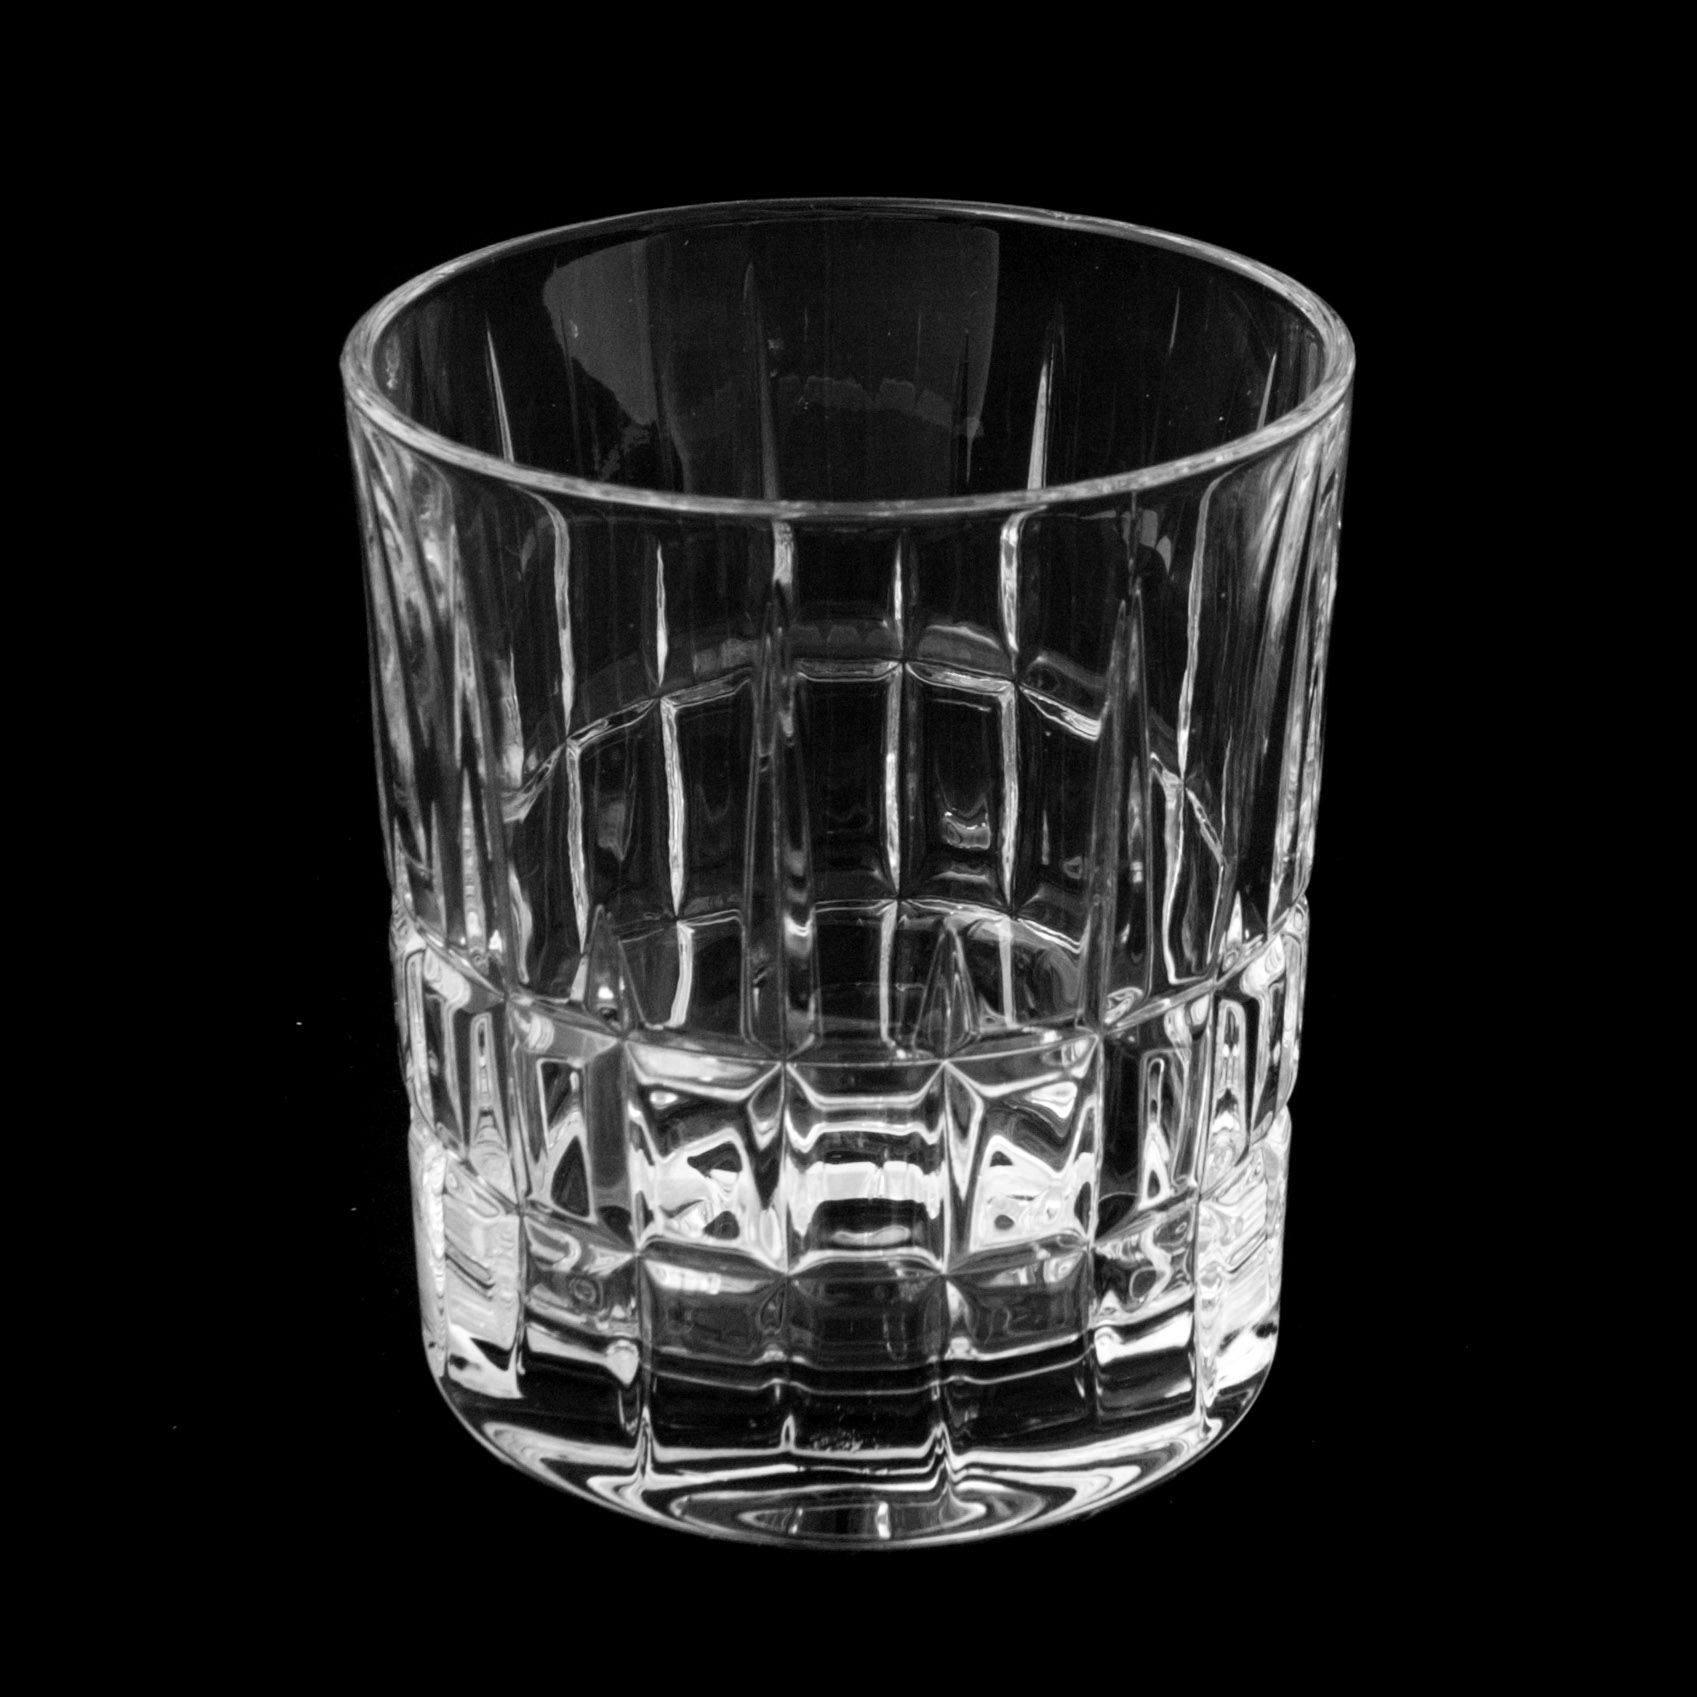 Набор стаканов для виски dover 320мл 6шт Crystal bohemia a.s. набор стаканов для виски crystal bohemia аngela 320мл 6шт 990 24600 0 42000 320 609